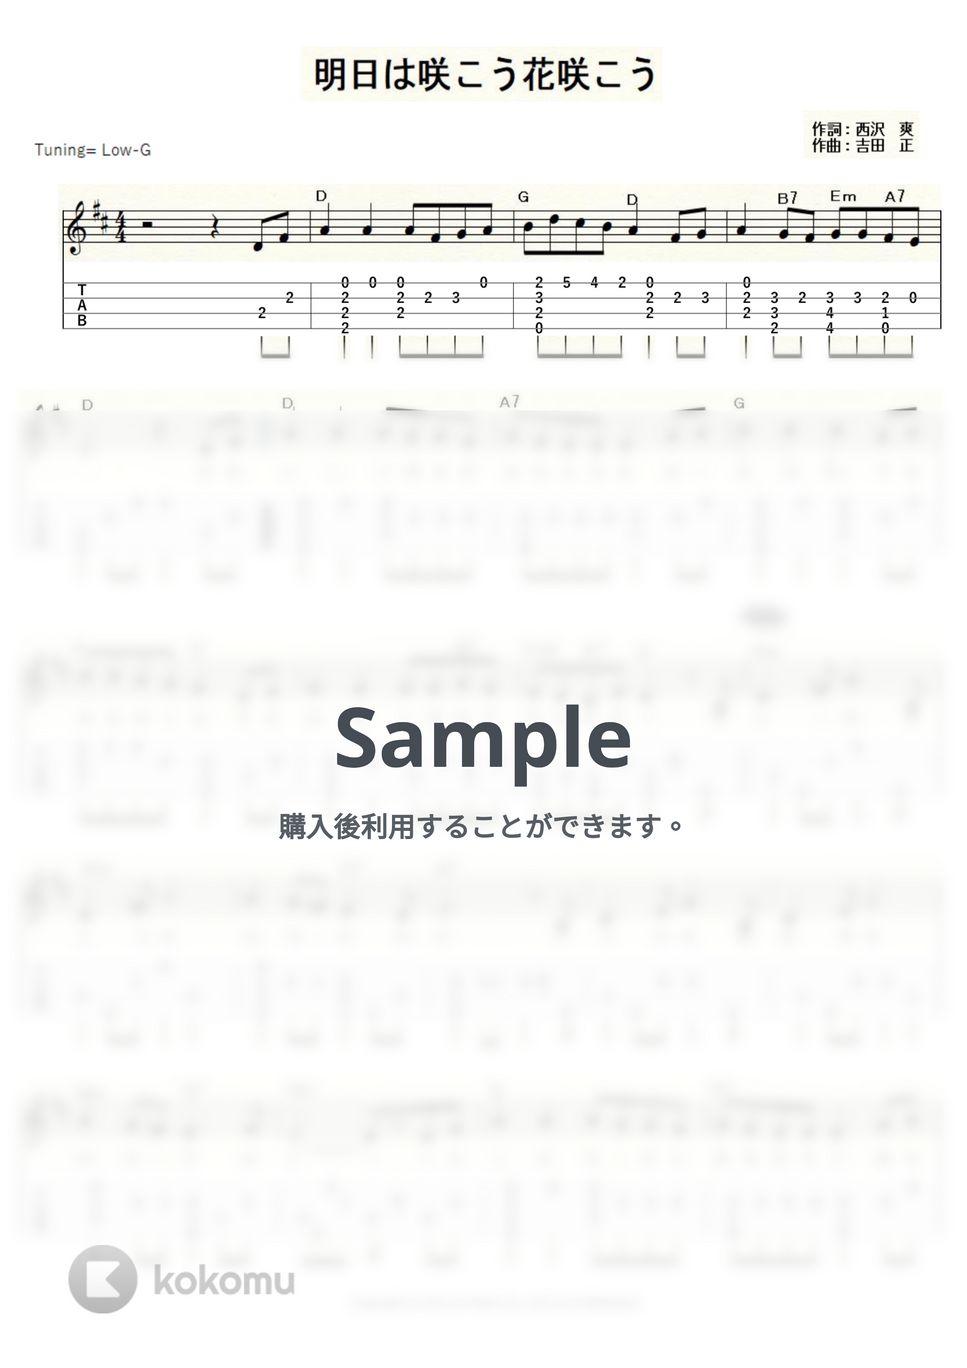 吉永小百合＆三田 明 - 明日は咲こう花咲こう (ｳｸﾚﾚｿﾛ/Low-G/初級～中級) by ukulelepapa